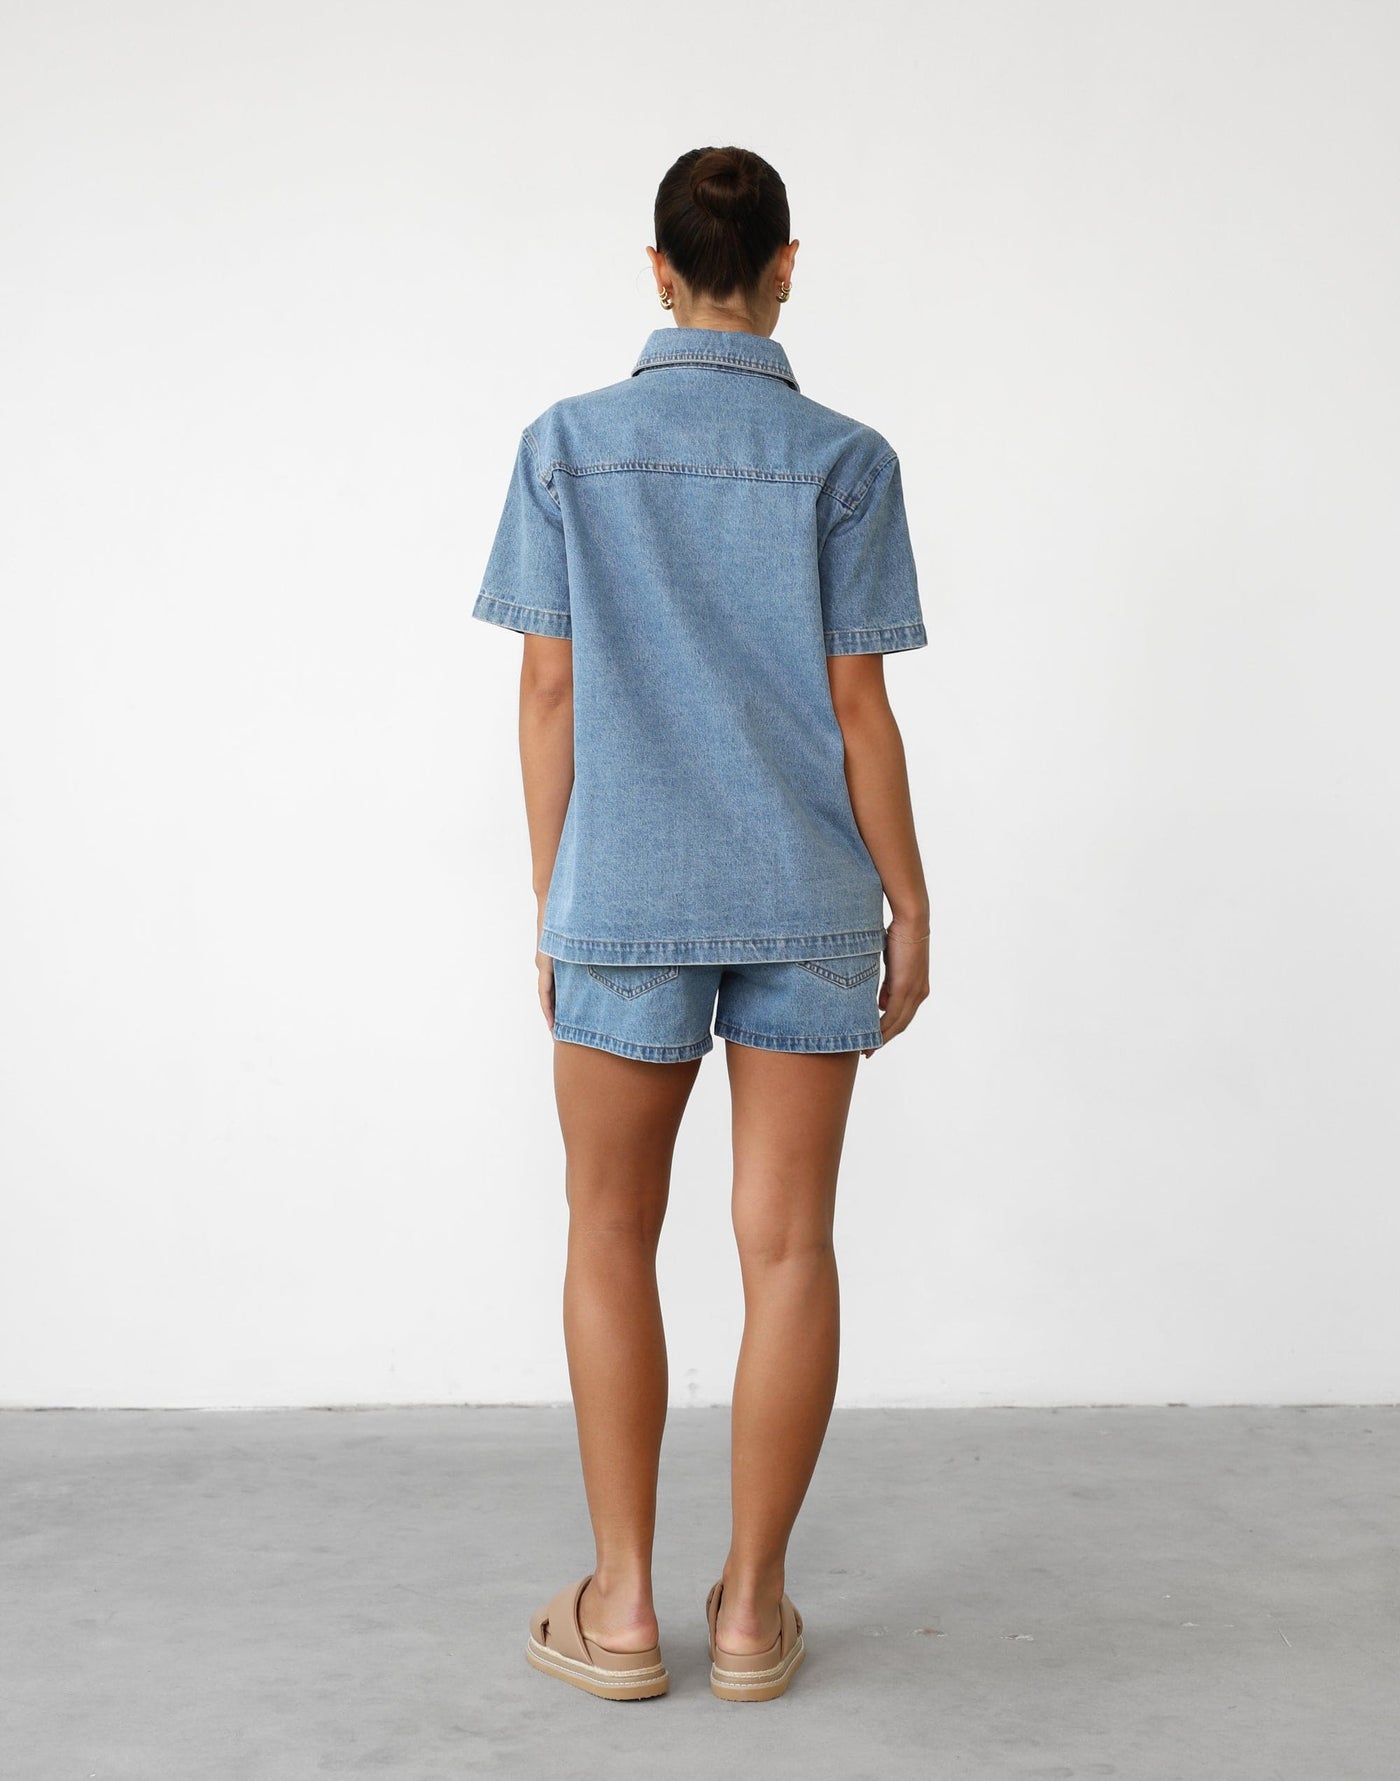 Elizha Shorts (Blue Denim) | Mid Waisted Denim Shorts - Women's Shorts - Charcoal Clothing